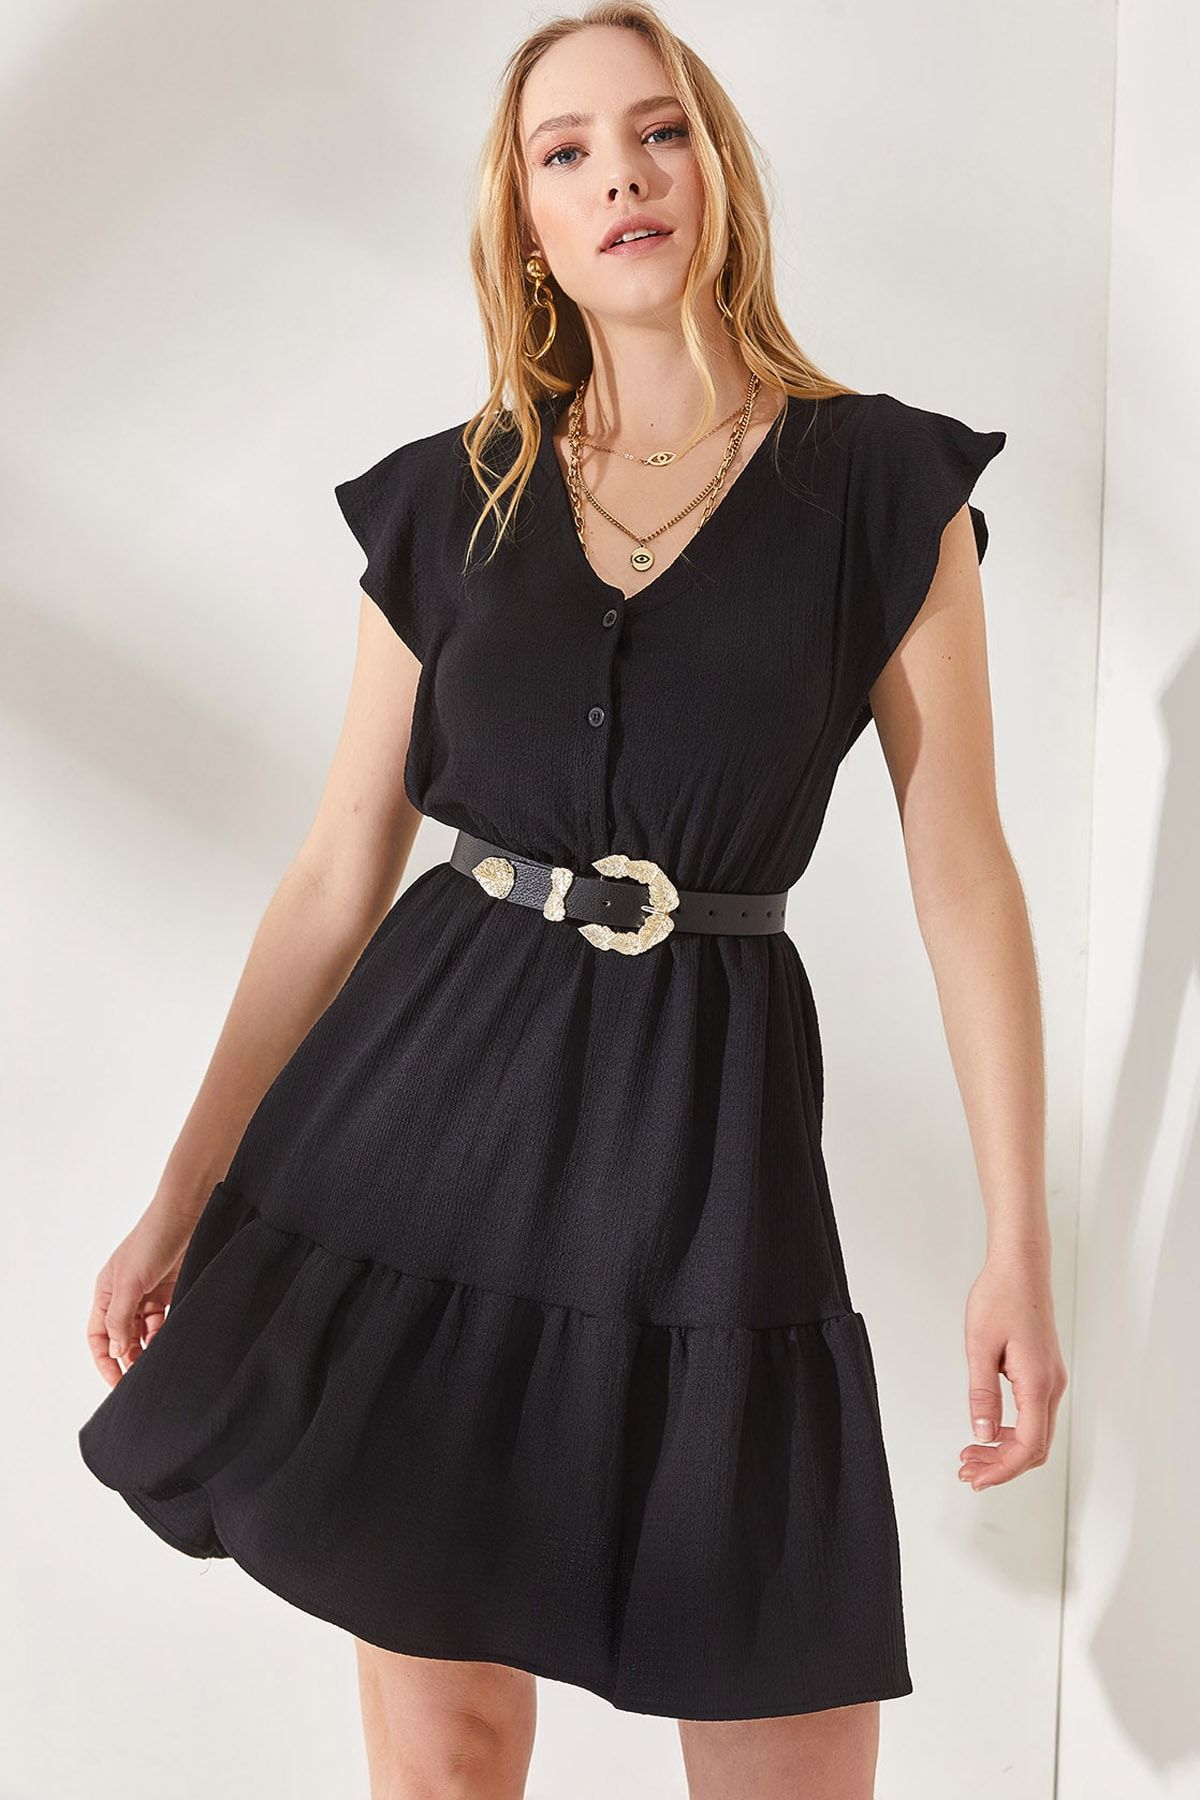 Olalook Kadın Siyah Kolu Fırfırlı Düğmeli Beli Lastikli Mini Elbise ELB-19001864